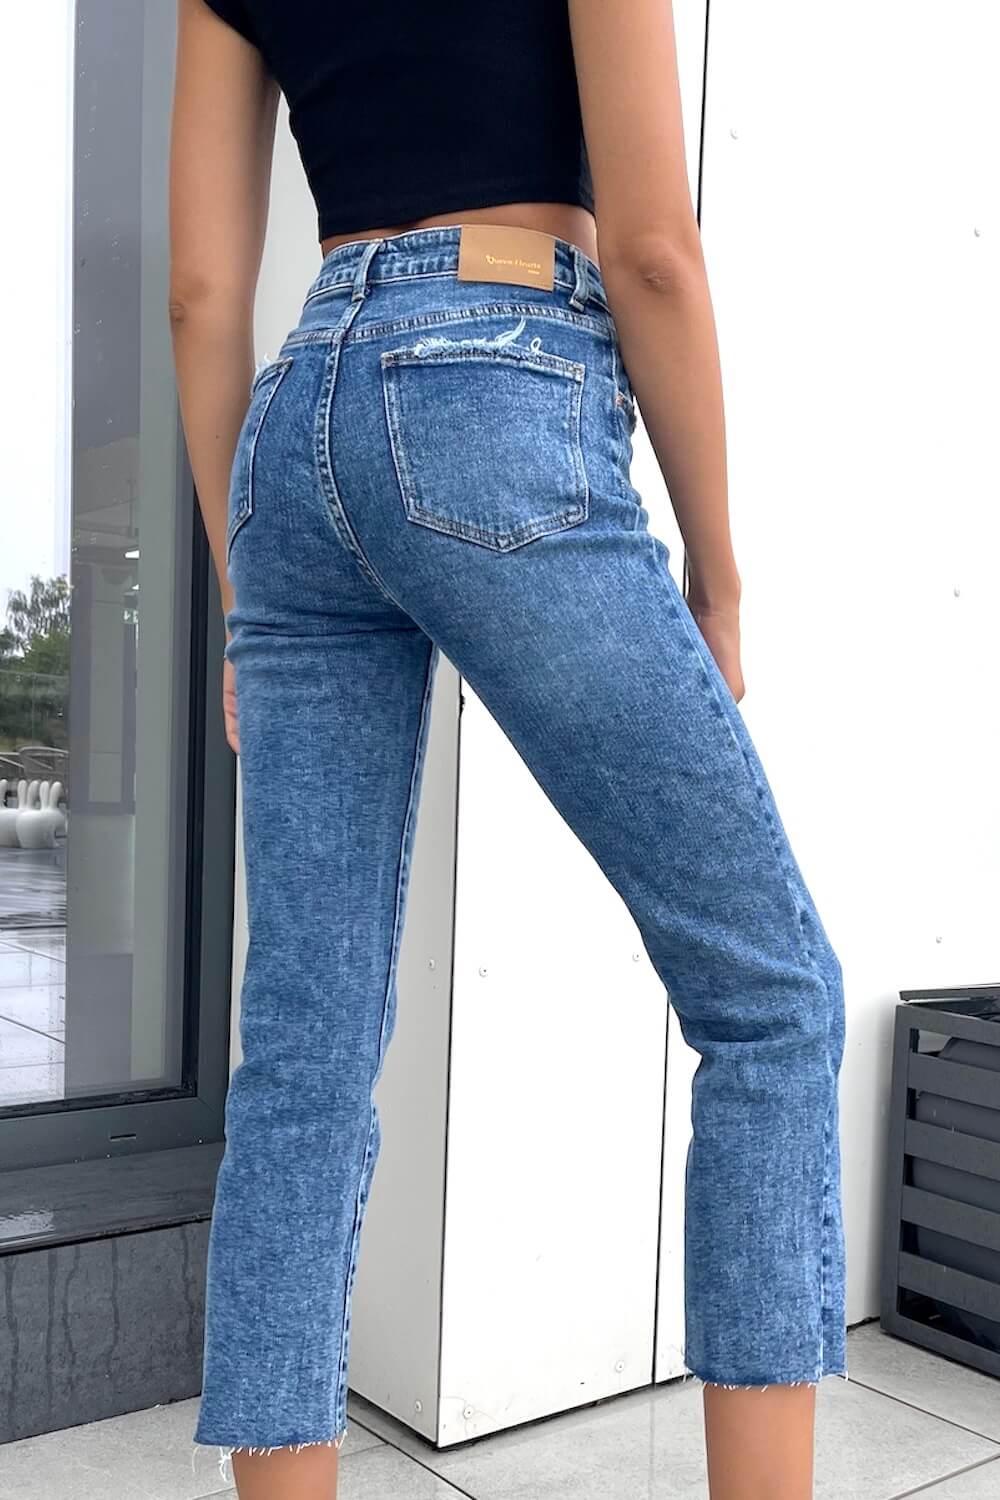 Spodnie Damskie Jeans Mom Fit